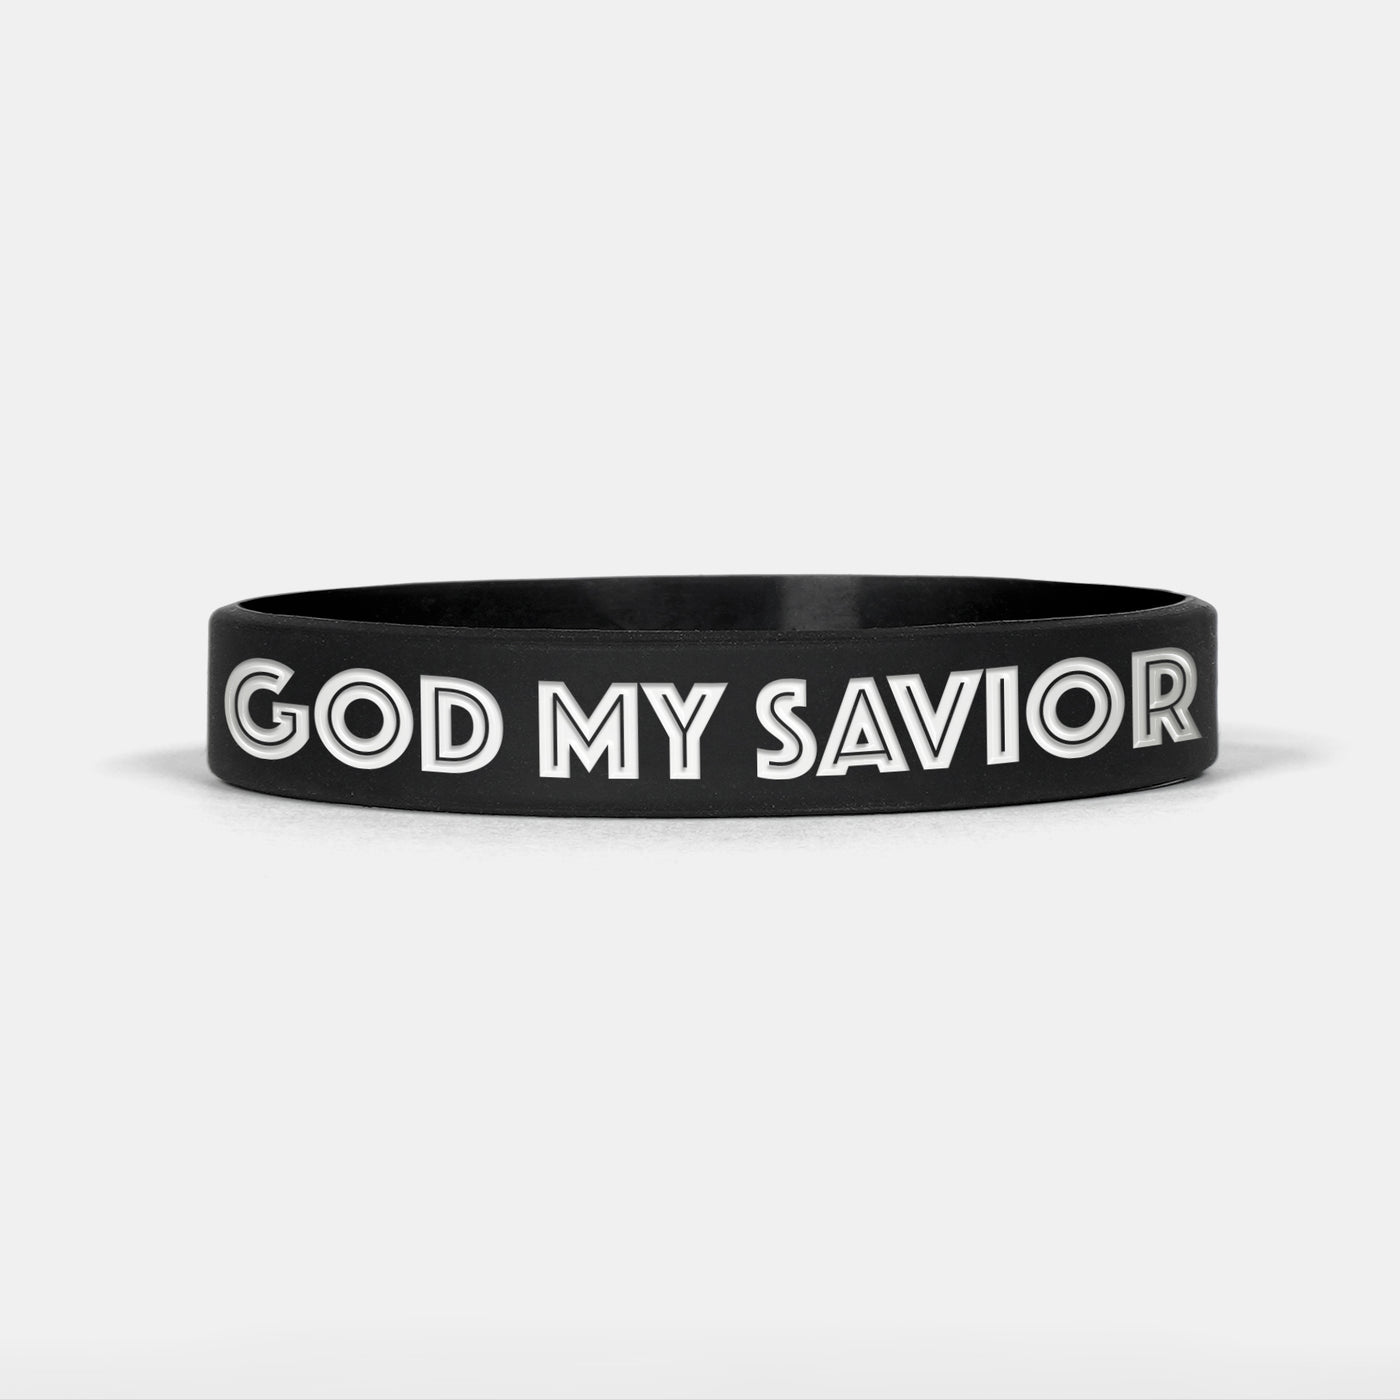 God My Savior Motivational Wristband